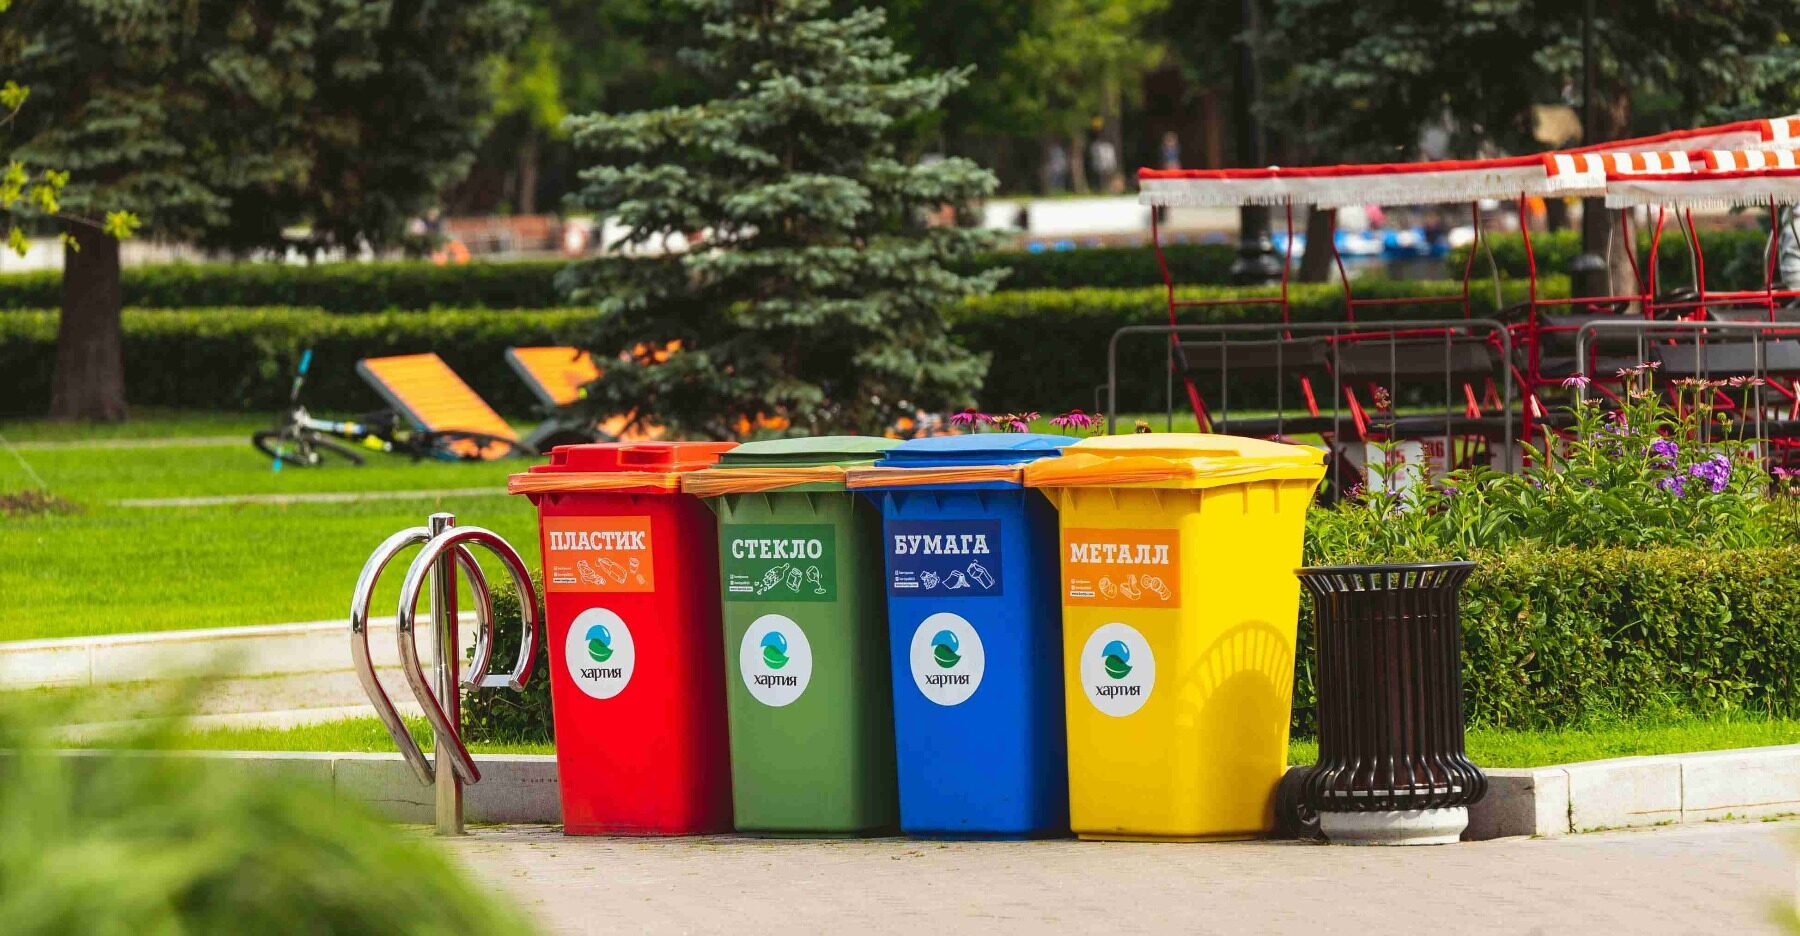 Proper Disposal of biodegradable trash bags